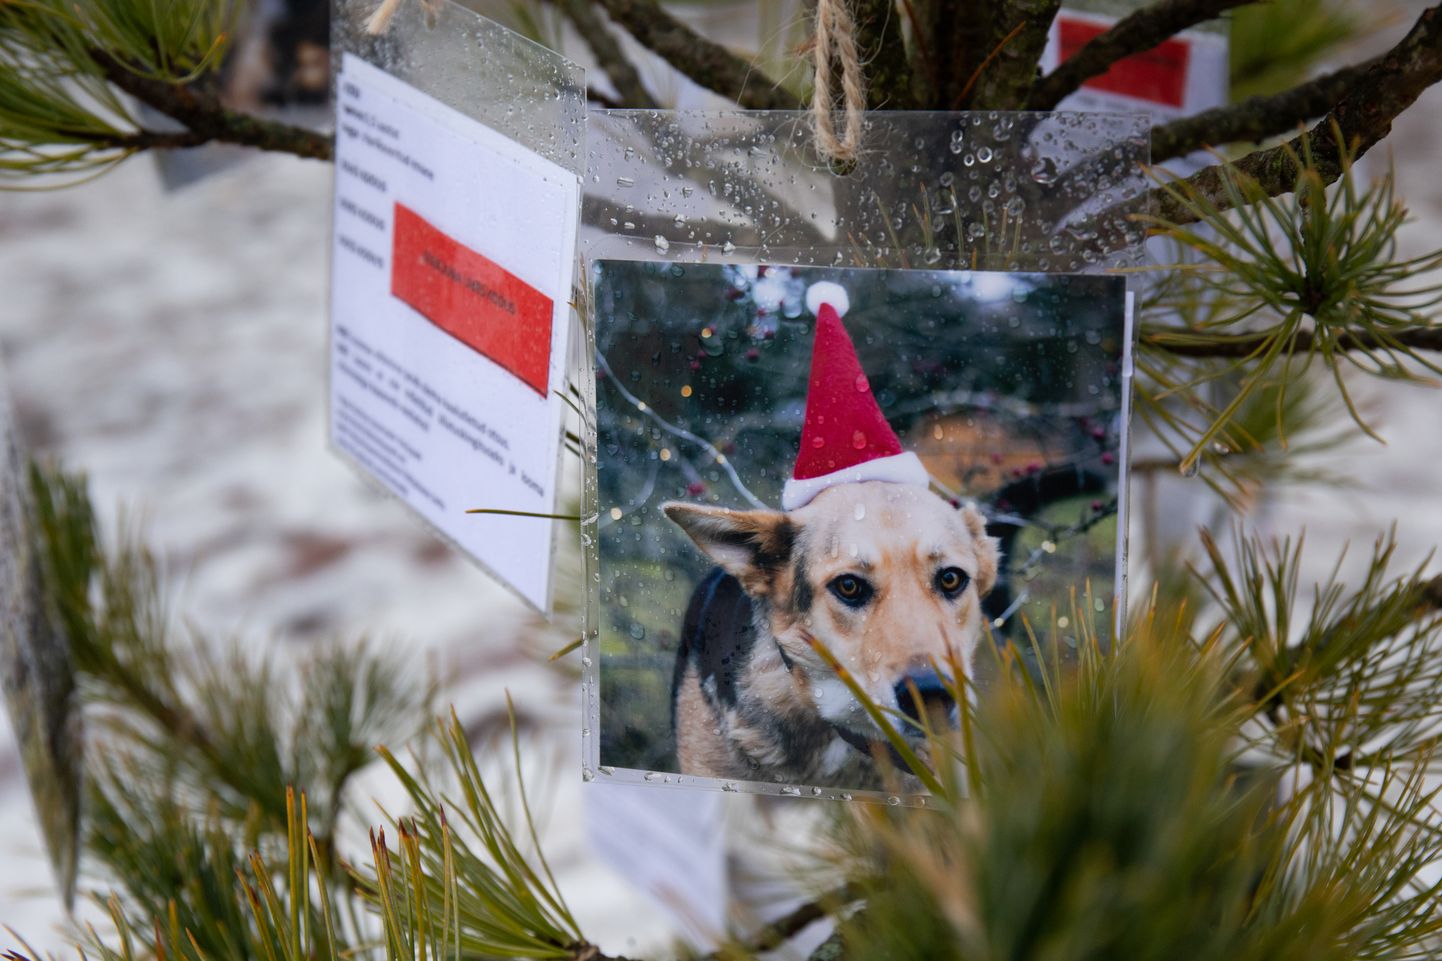 Tartu raekoja platsile on ka tänavu püsti pandud väike  jõulupuu loomadele kus ripuvad loomade varjupaigas kodu otsivate loomade pildid koos kirjeldusega.